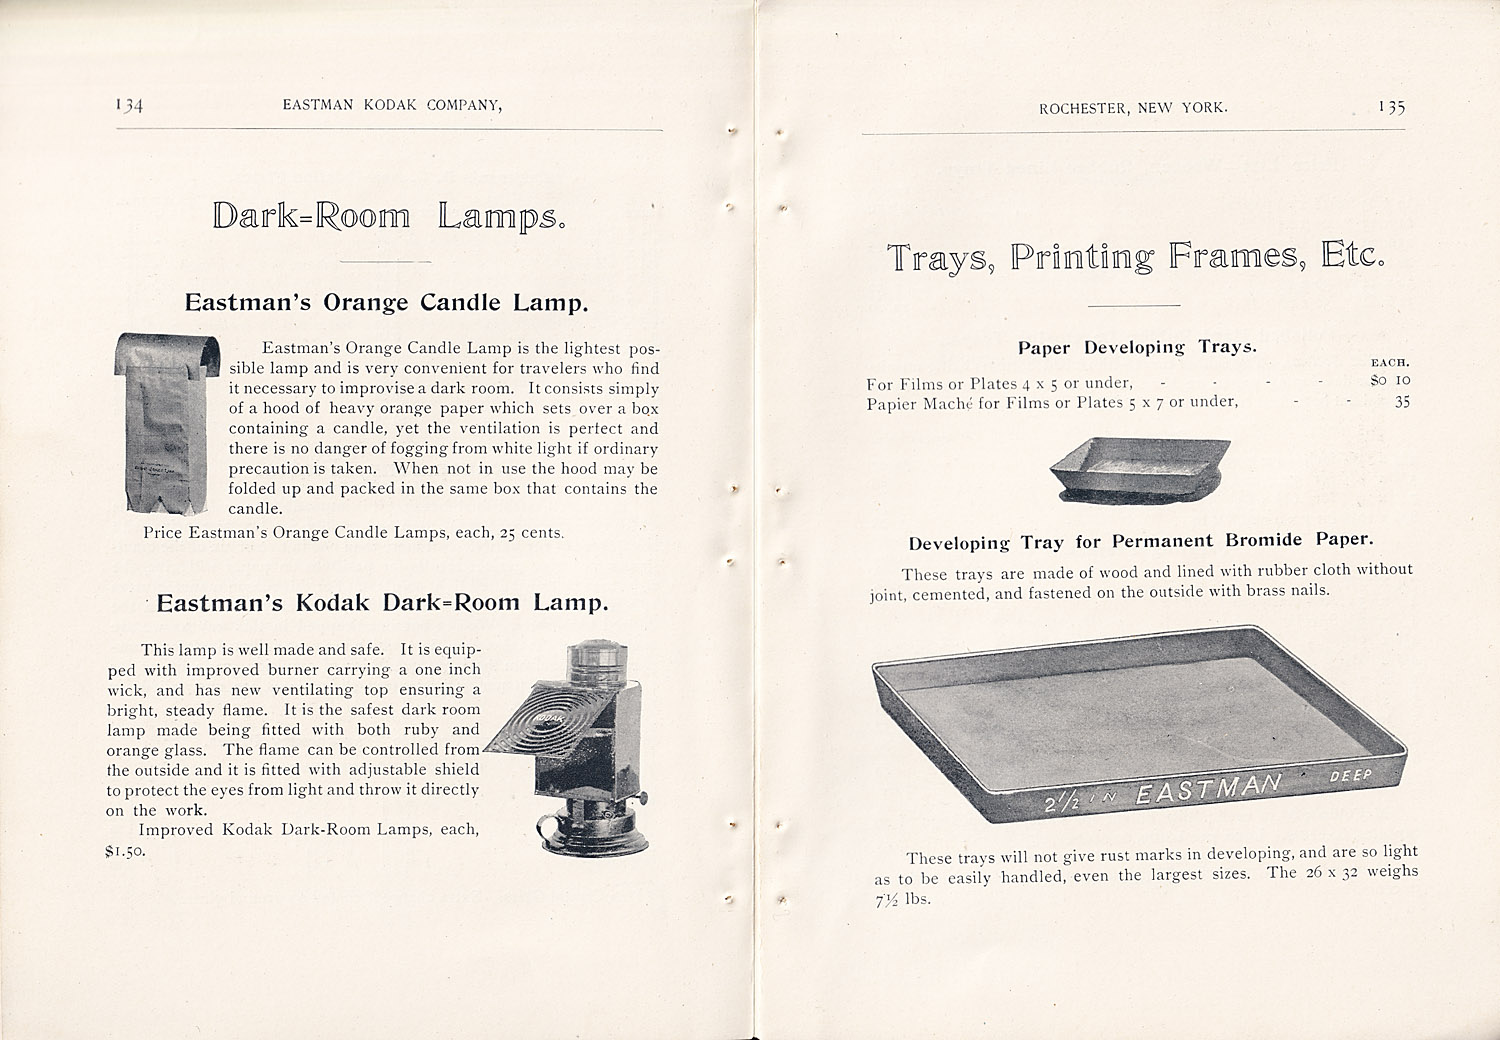 1370.ekc.kodak.products.1895-134-135-1500.jpg